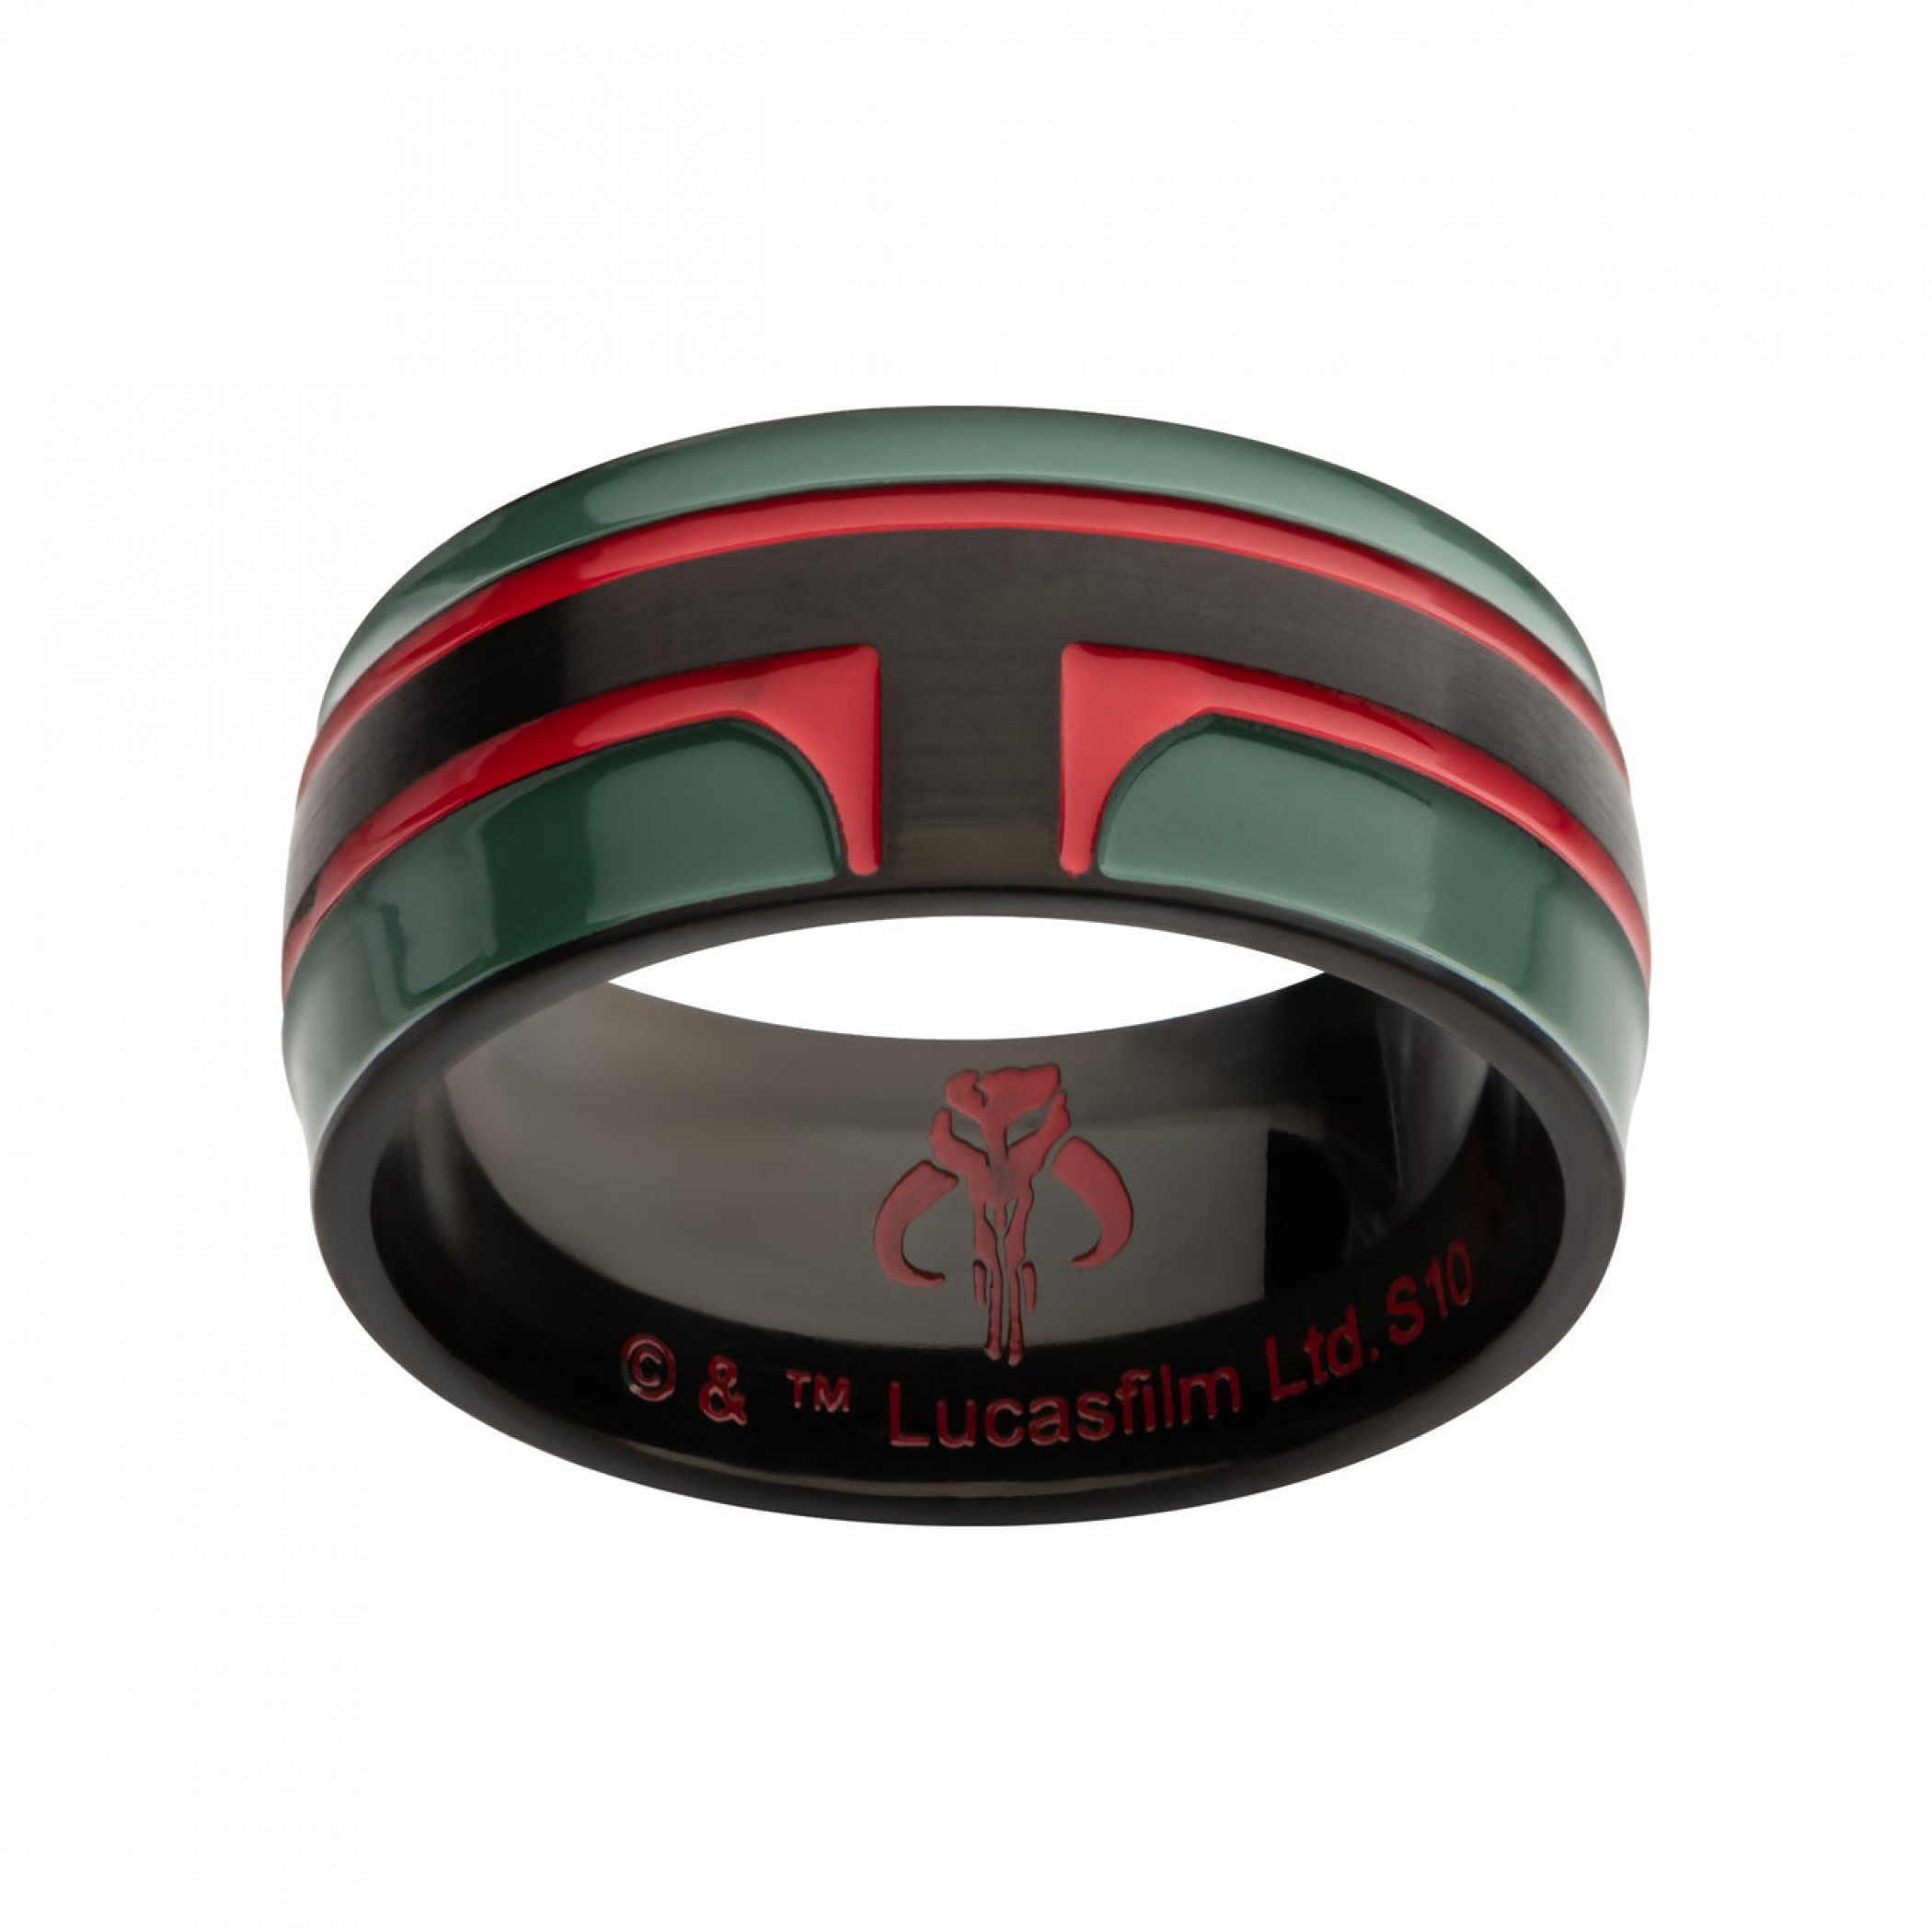 Star Wars Boba Fett Helmet Ring